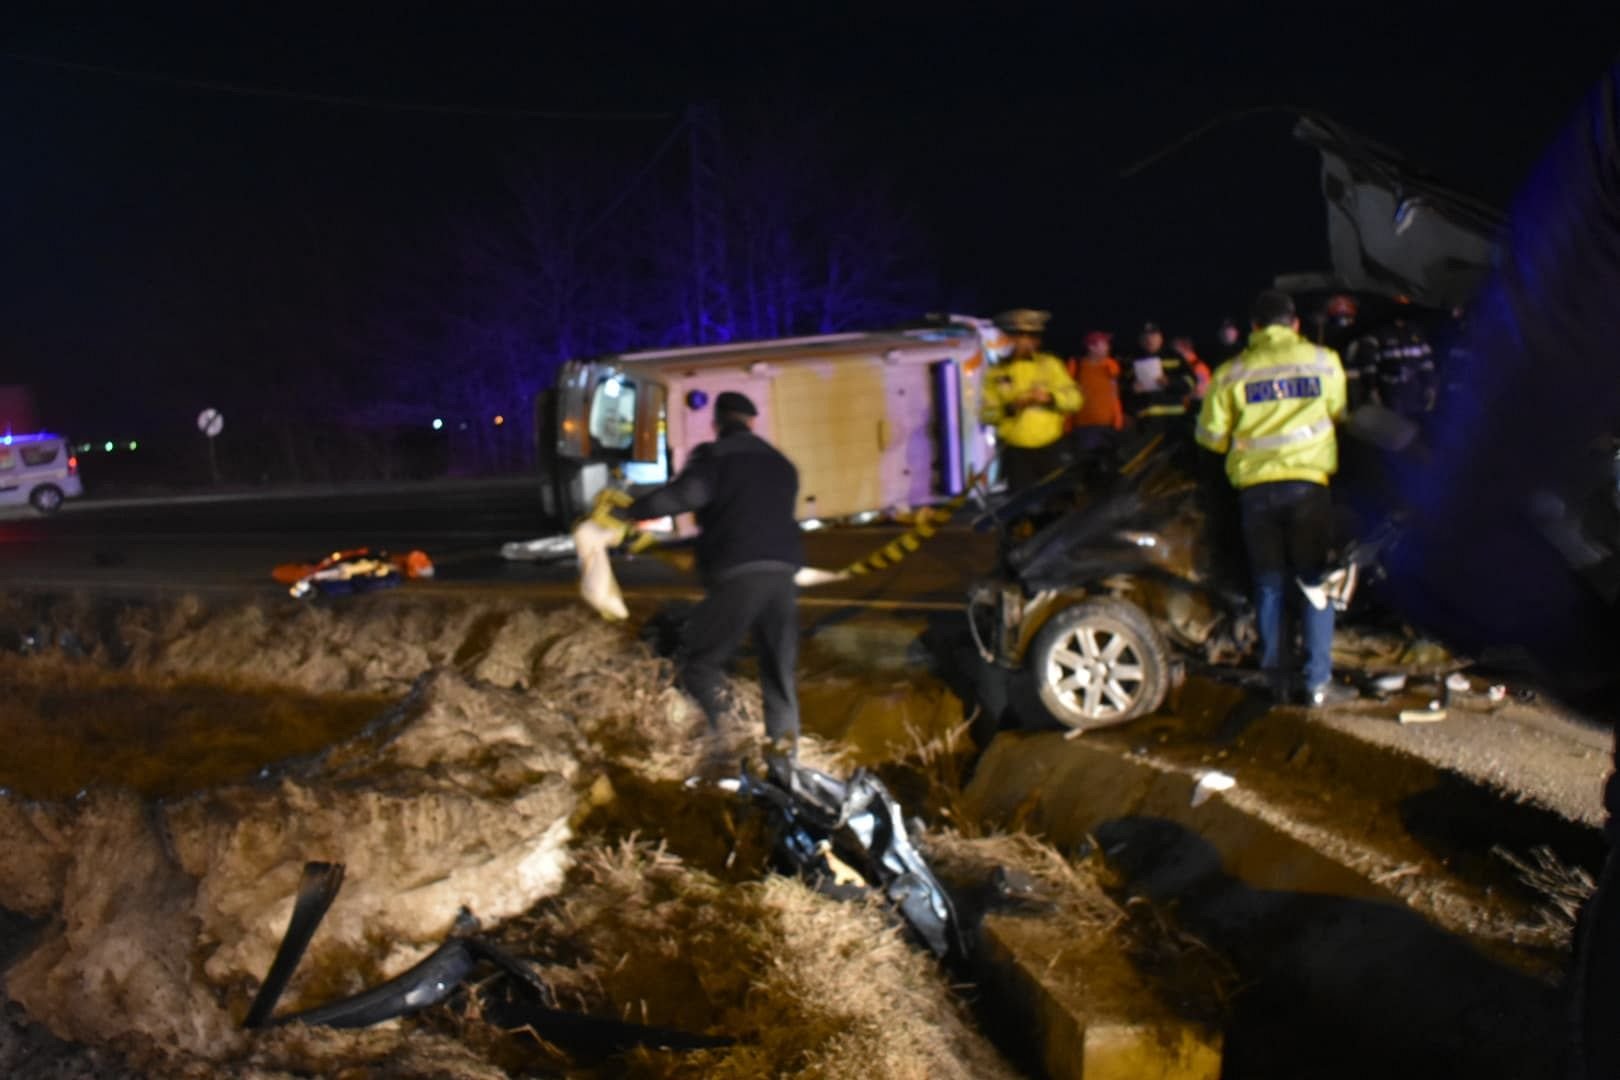  Ambulanța care aducea un pacient la Iași, lovită puternic și răsturnată de un autoturism